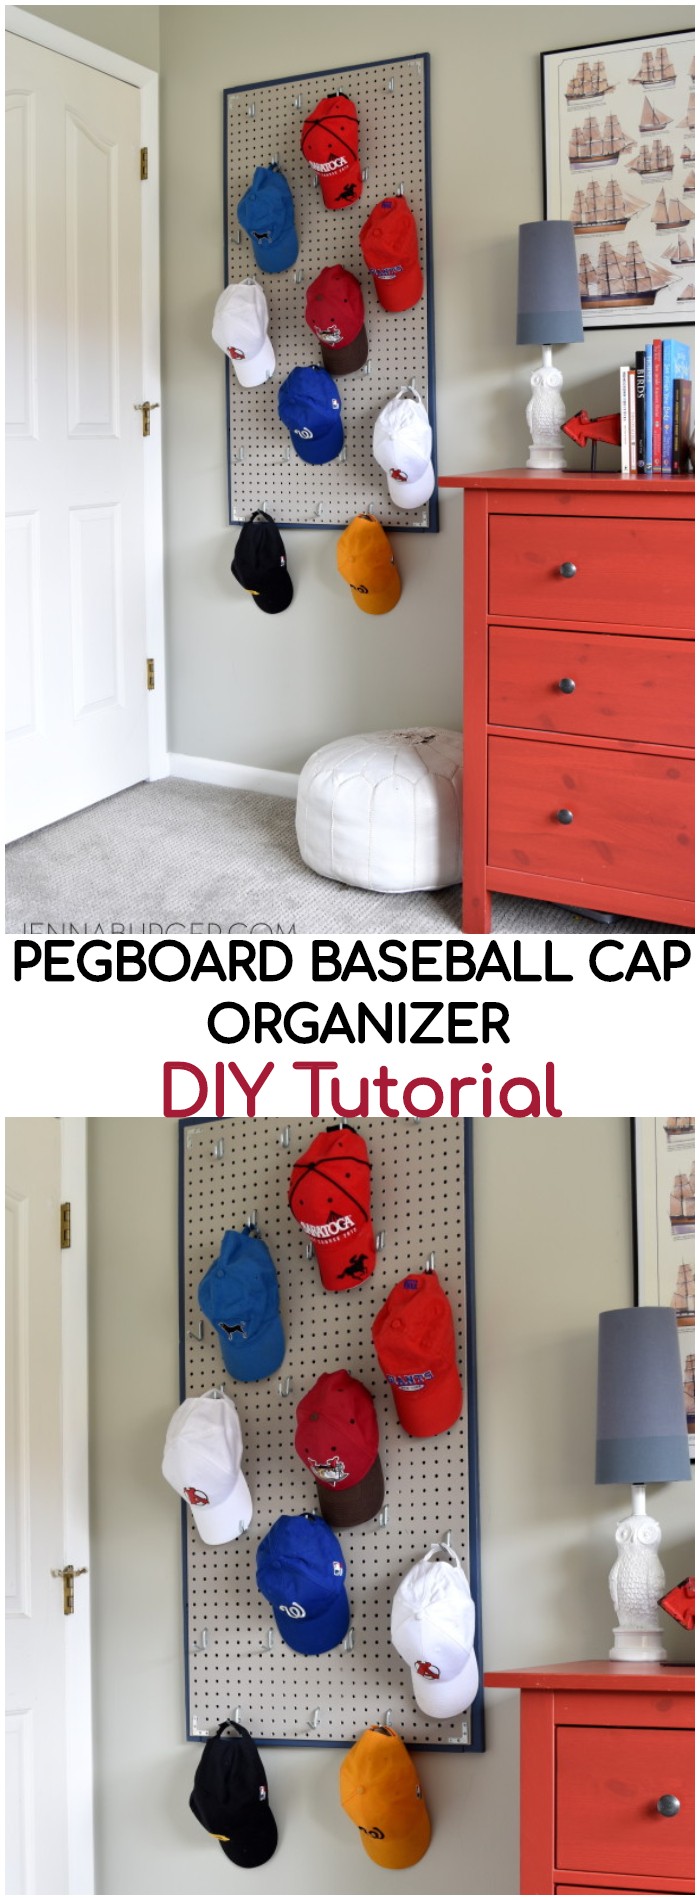 DIY Pegboard Baseball Cap Organizer